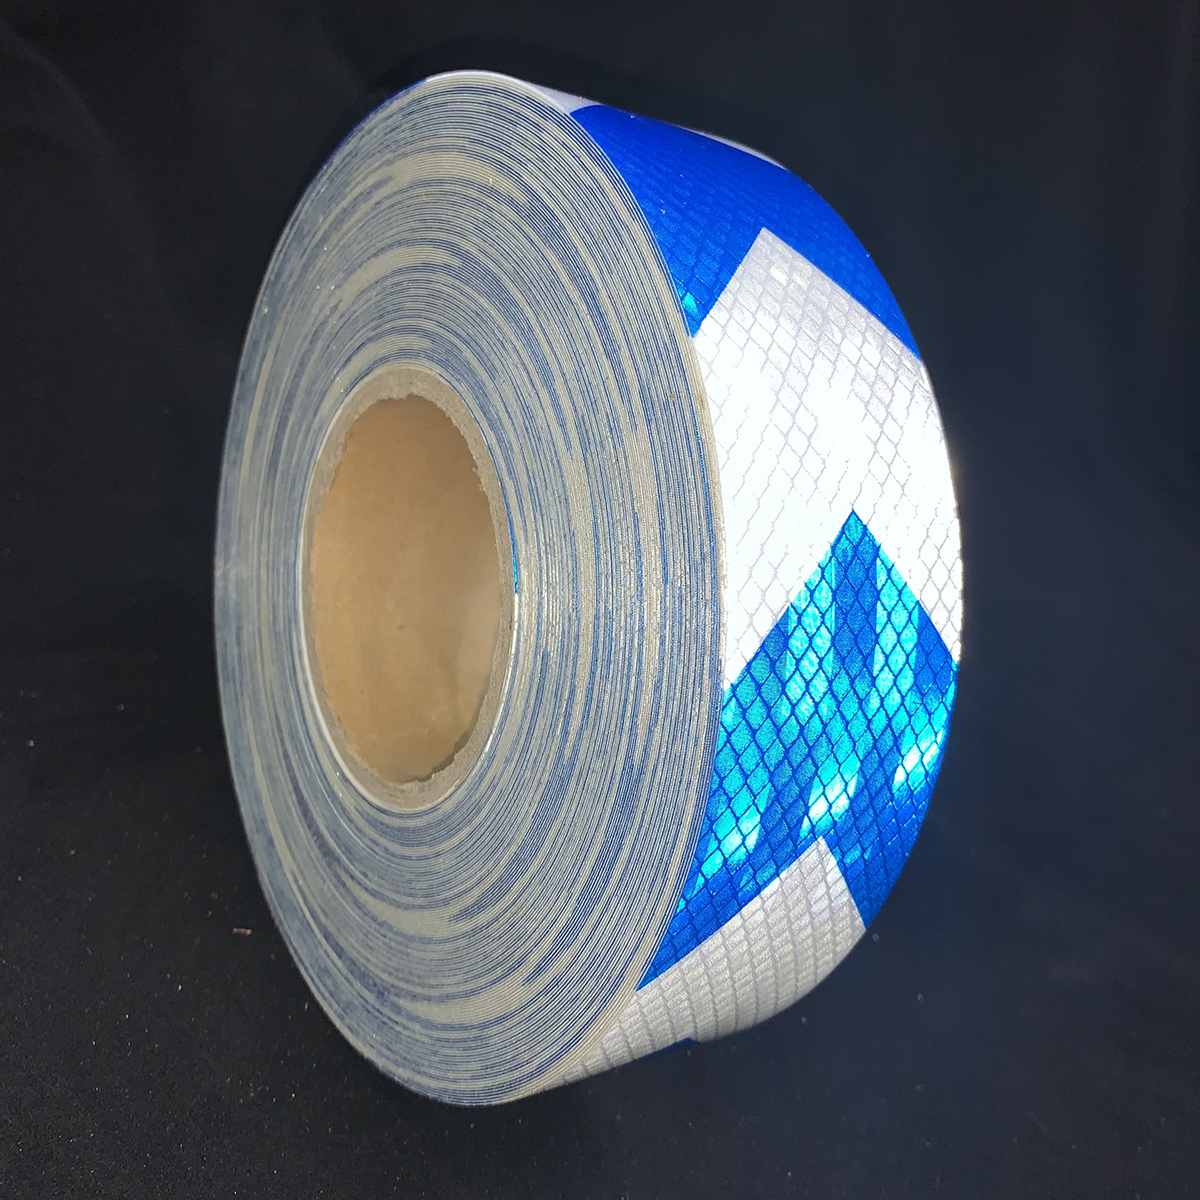 Lámina reflectante de flecha microprismática PET de 5 cm * 25 m blanca + azul